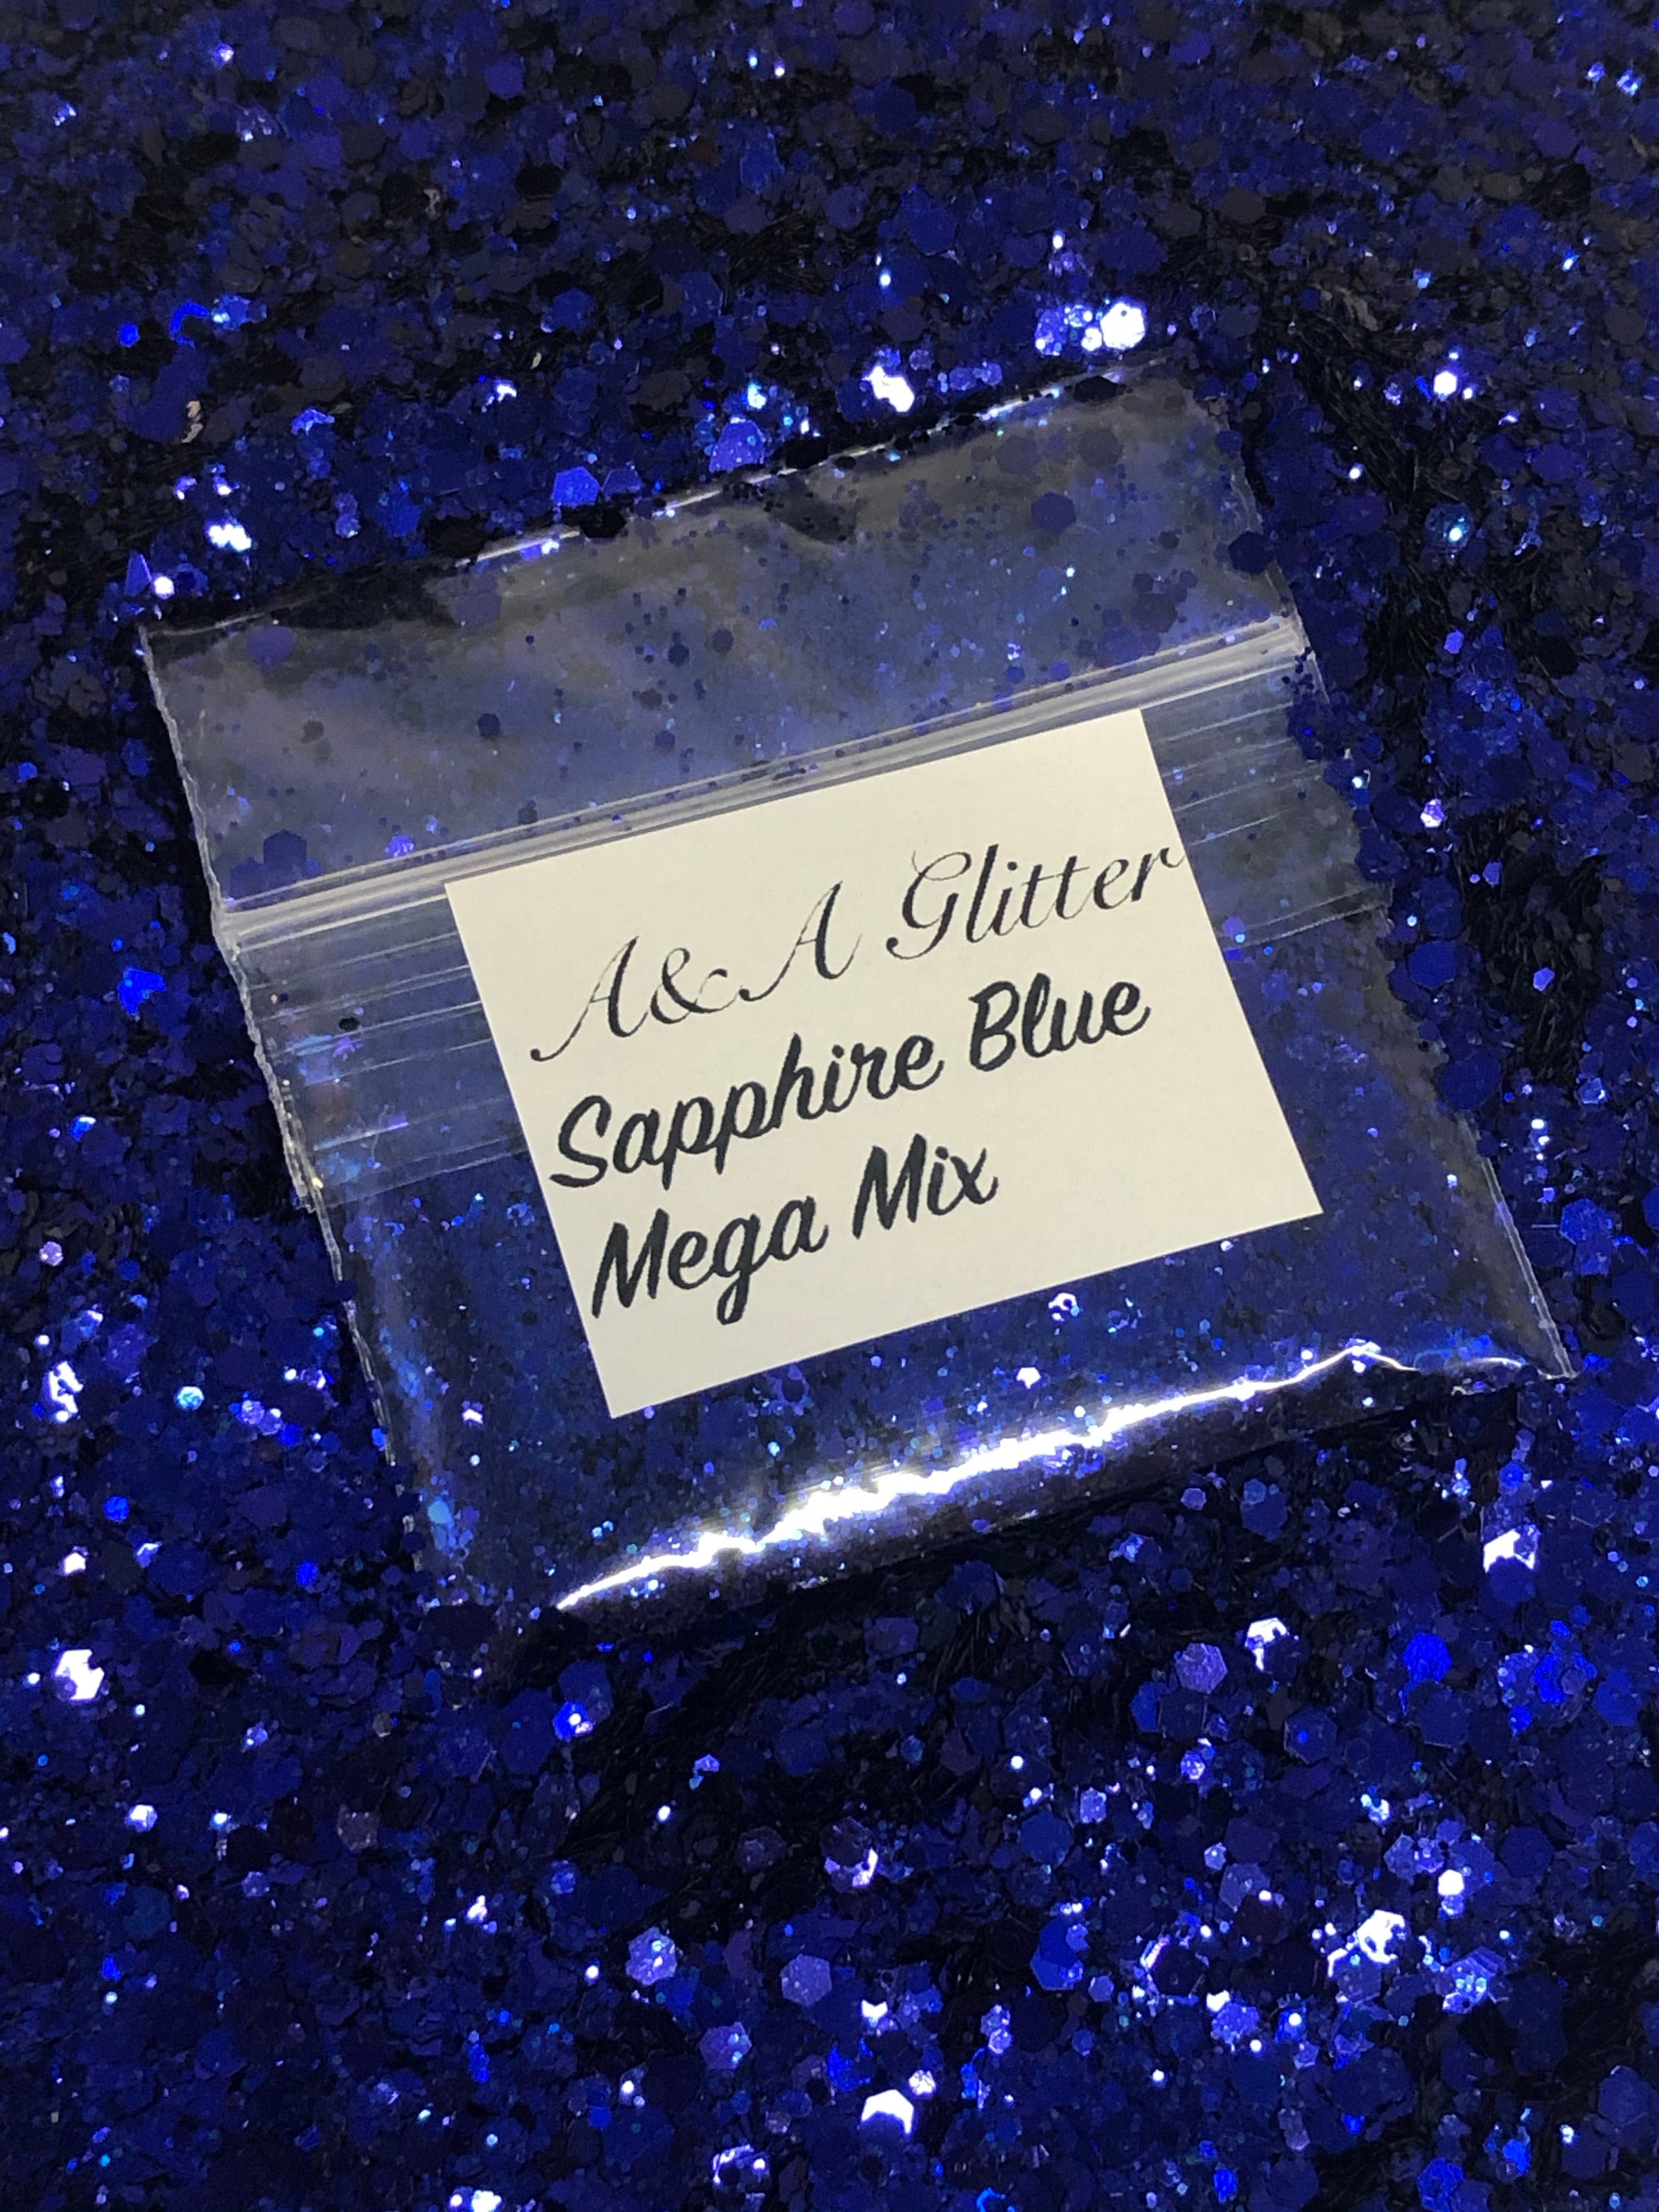 Sapphire Blue Mega Mix